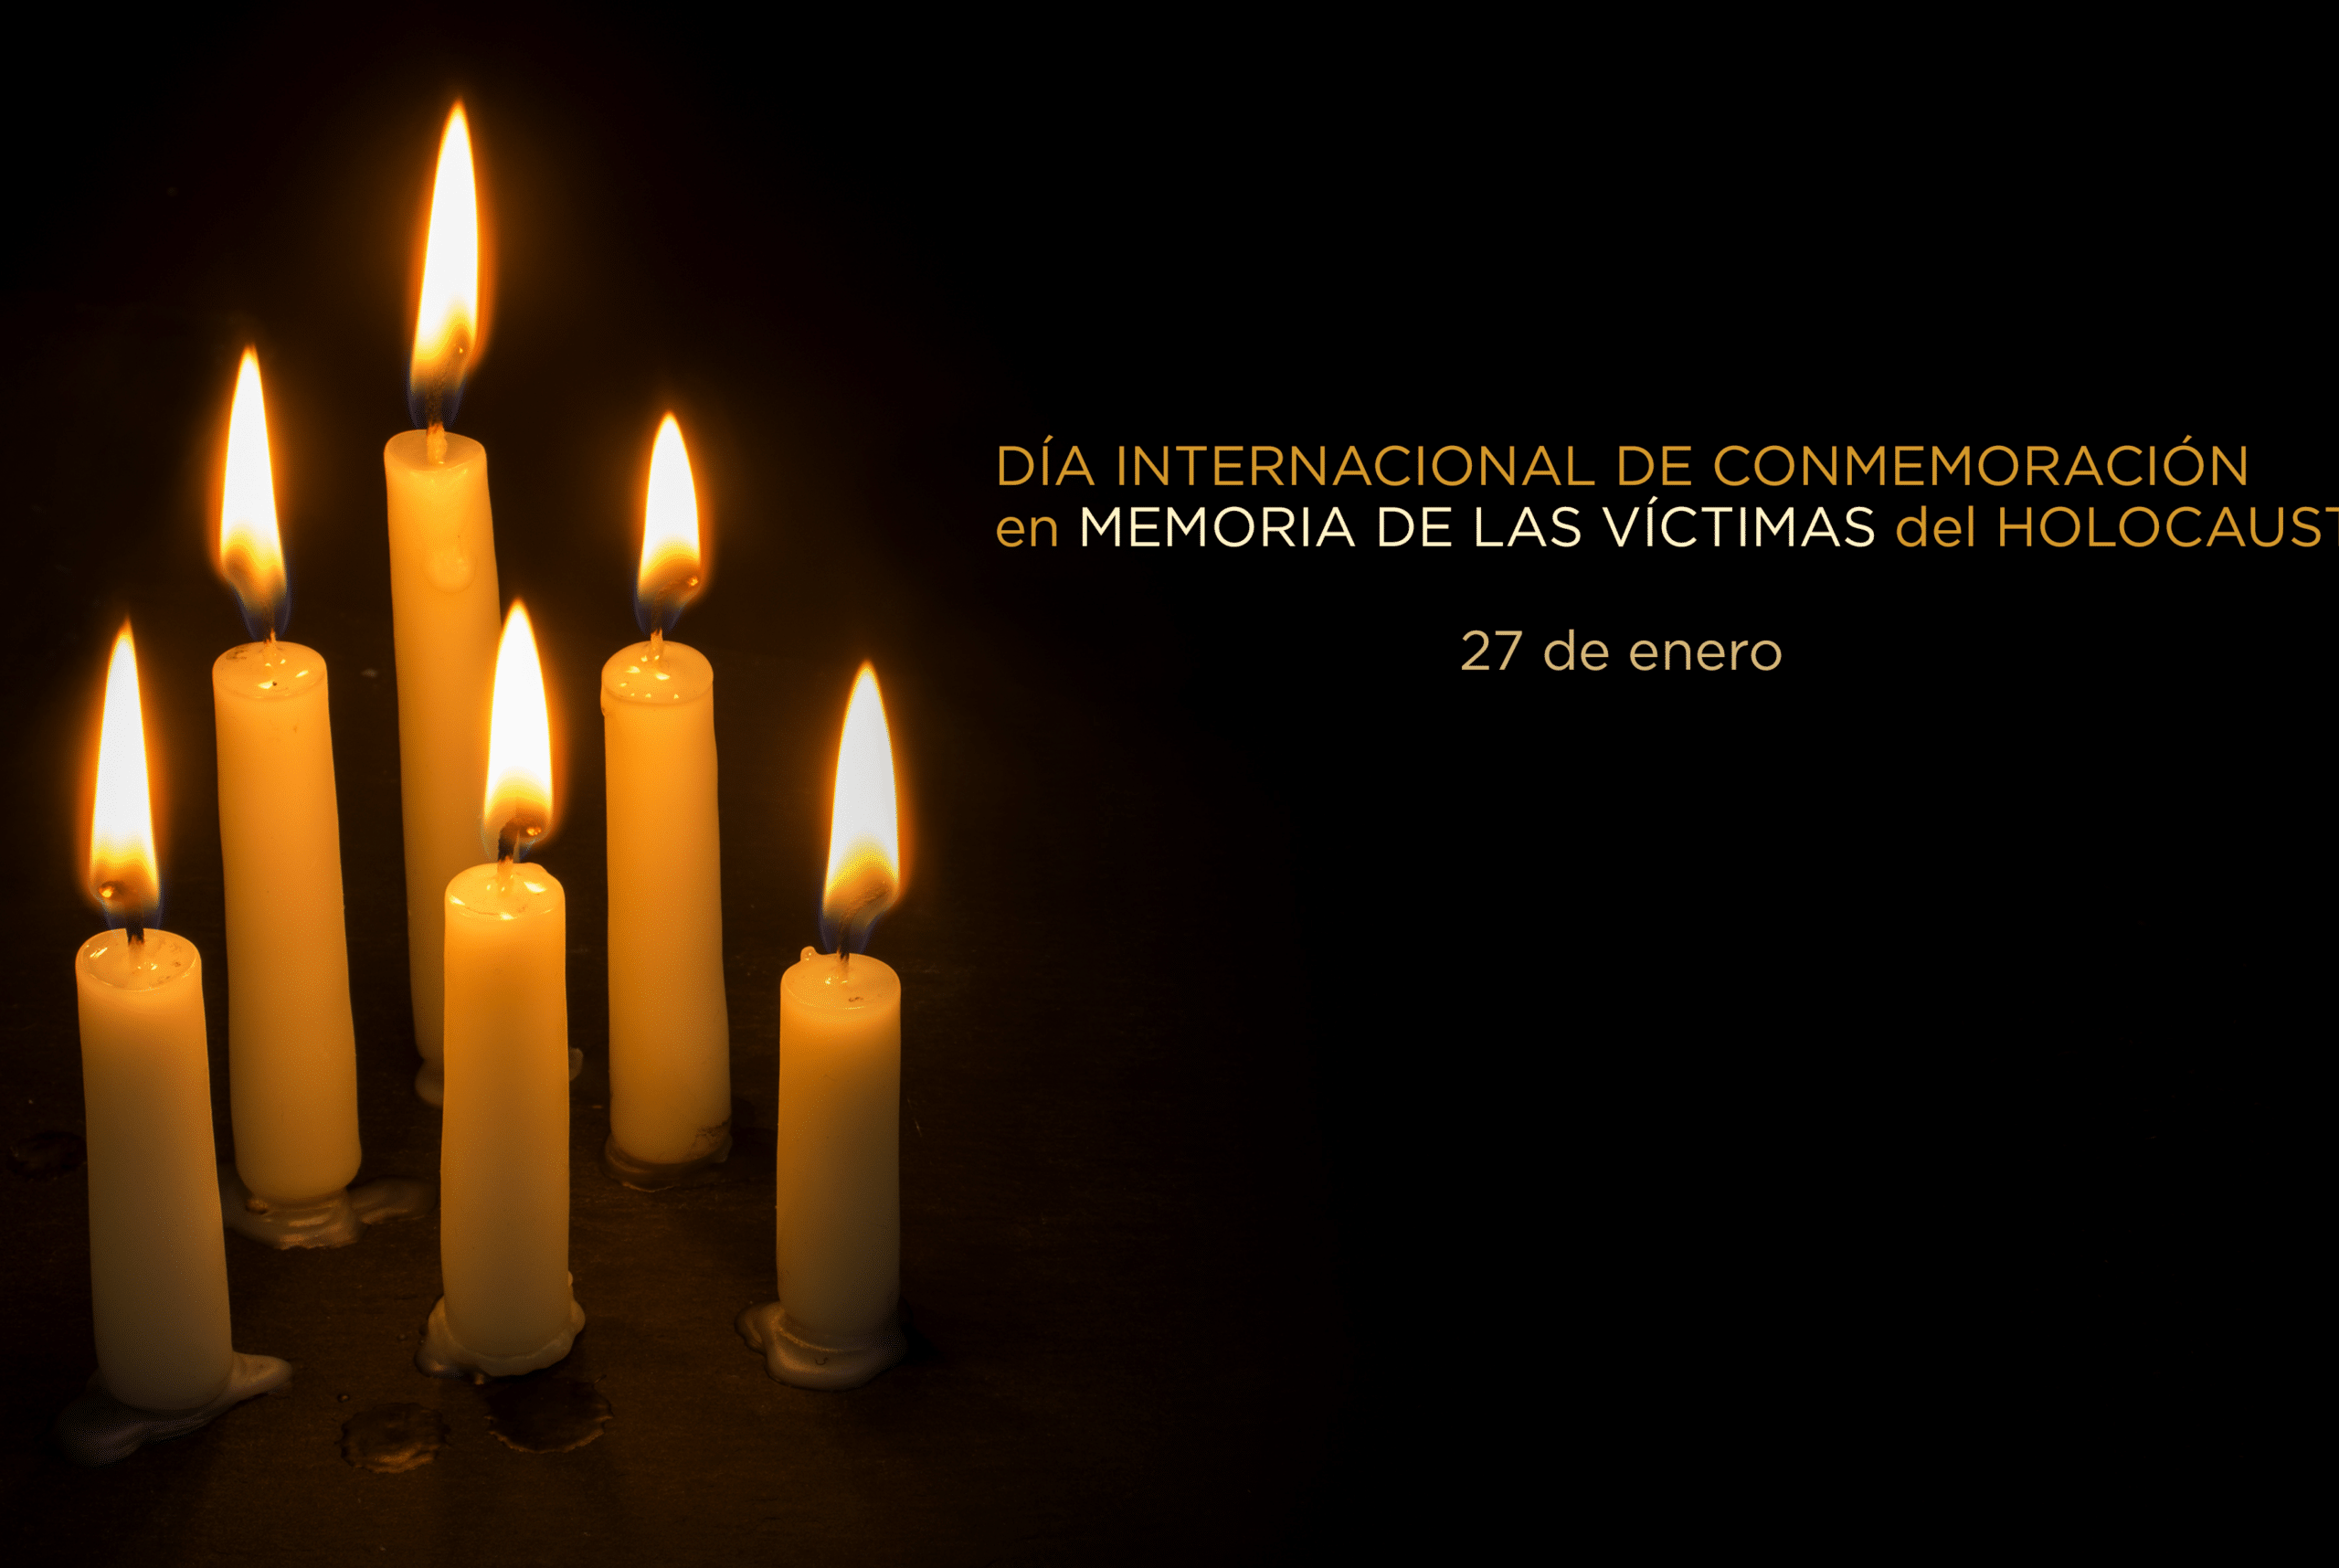 dia internacional de conmemoracion de las victimas del holocausto 27 de enero